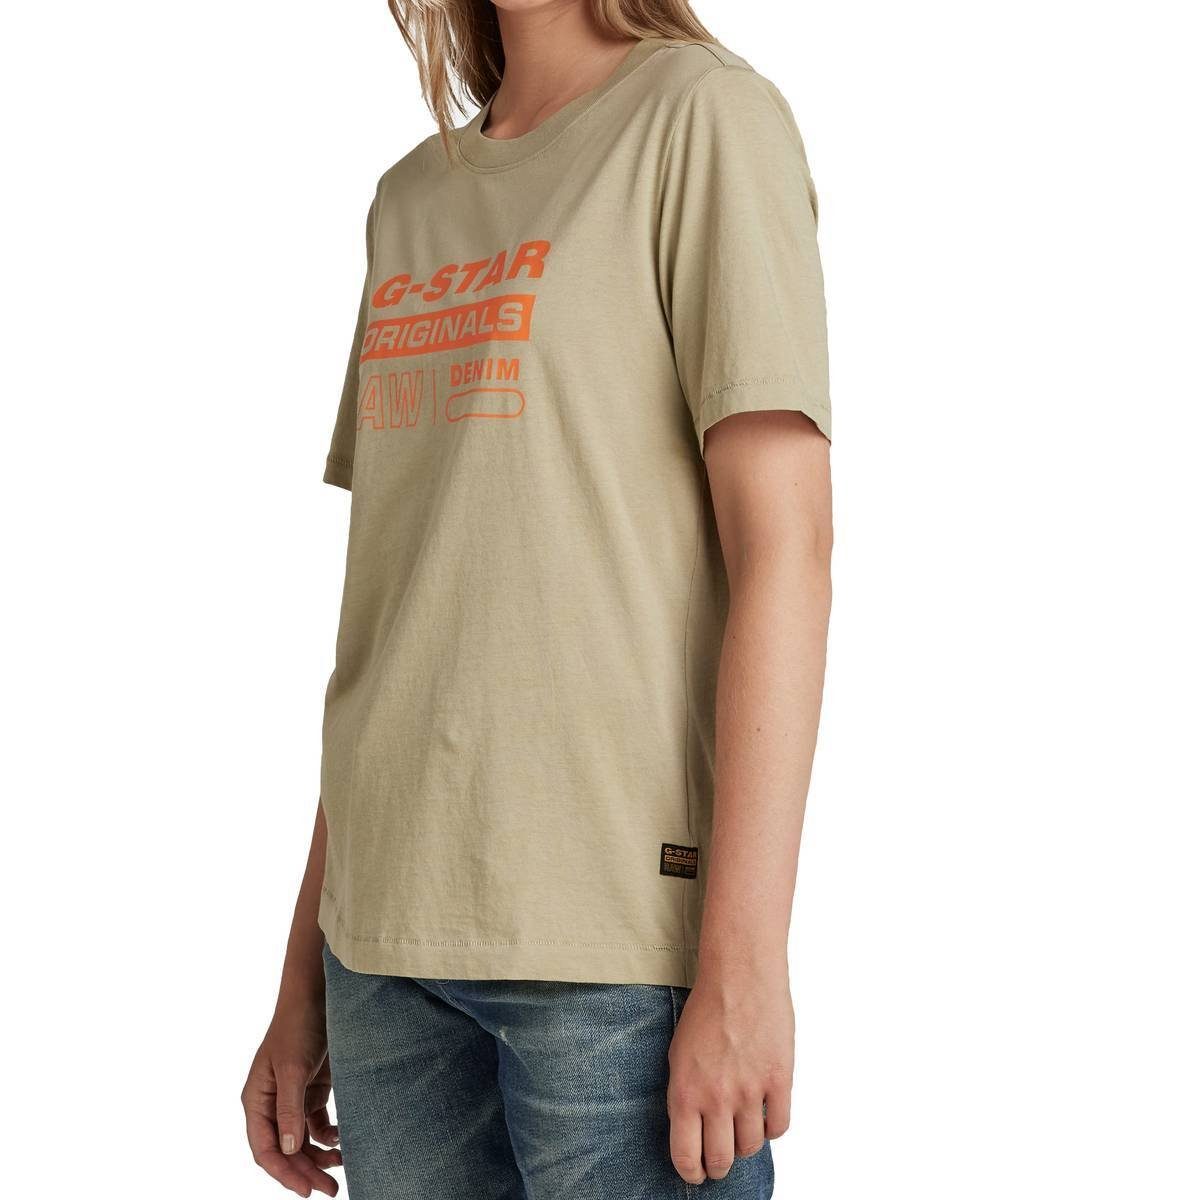 G-Star RAW T-Shirt Originals Regular Moos) - Damen Fit Grün T-Shirt Label (lt